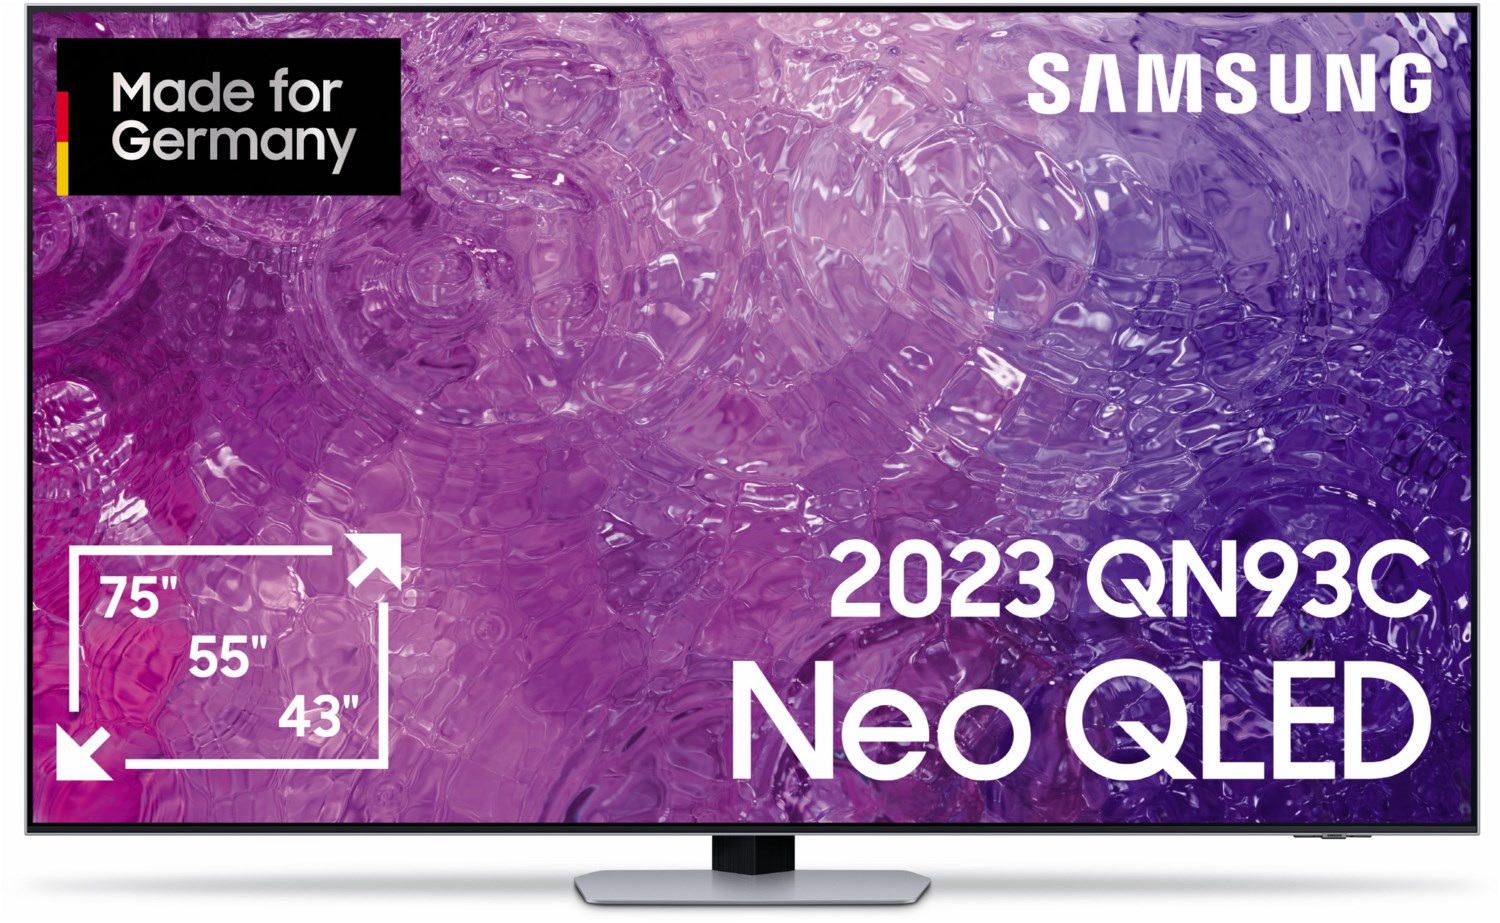 Samsung Neo QLED TV UHD 4K 55 Zoll (138 cm) eclipsesilber von Samsung